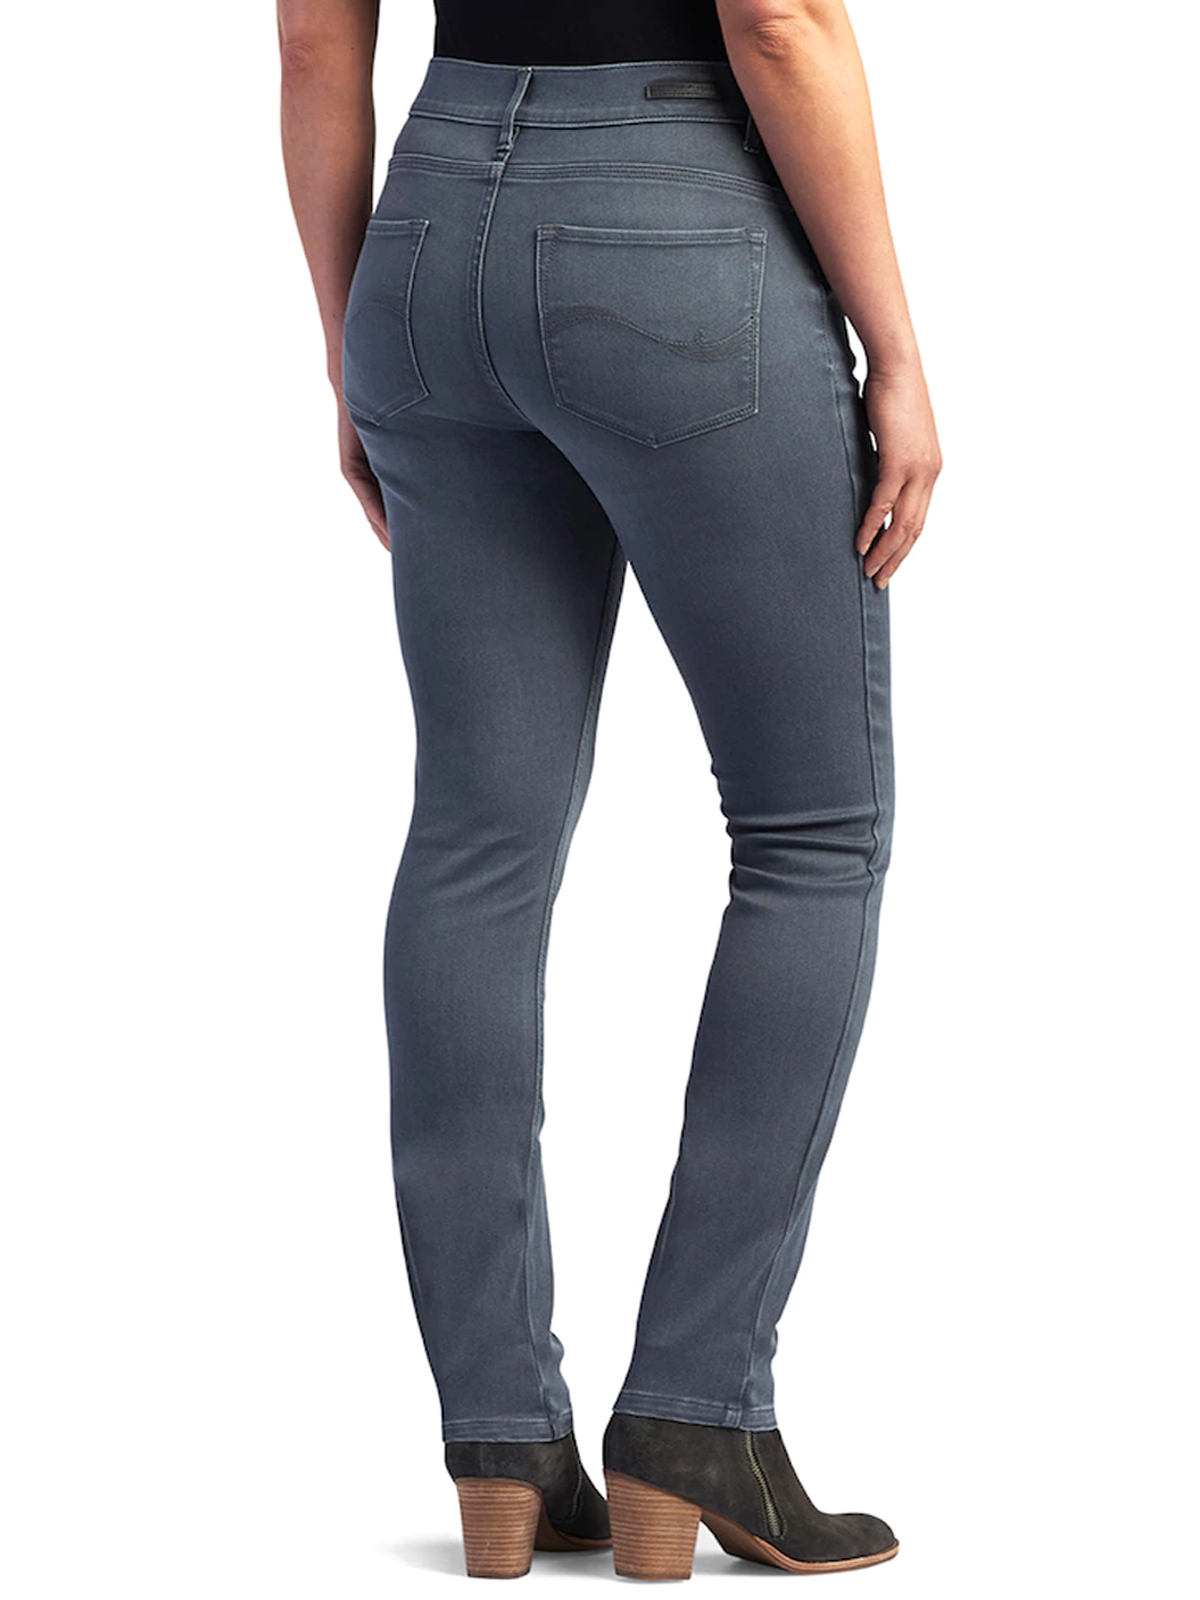 Lee - - Lee GREY Easy Fit 5-Pocket Denim Jeans - Size 6 to 18